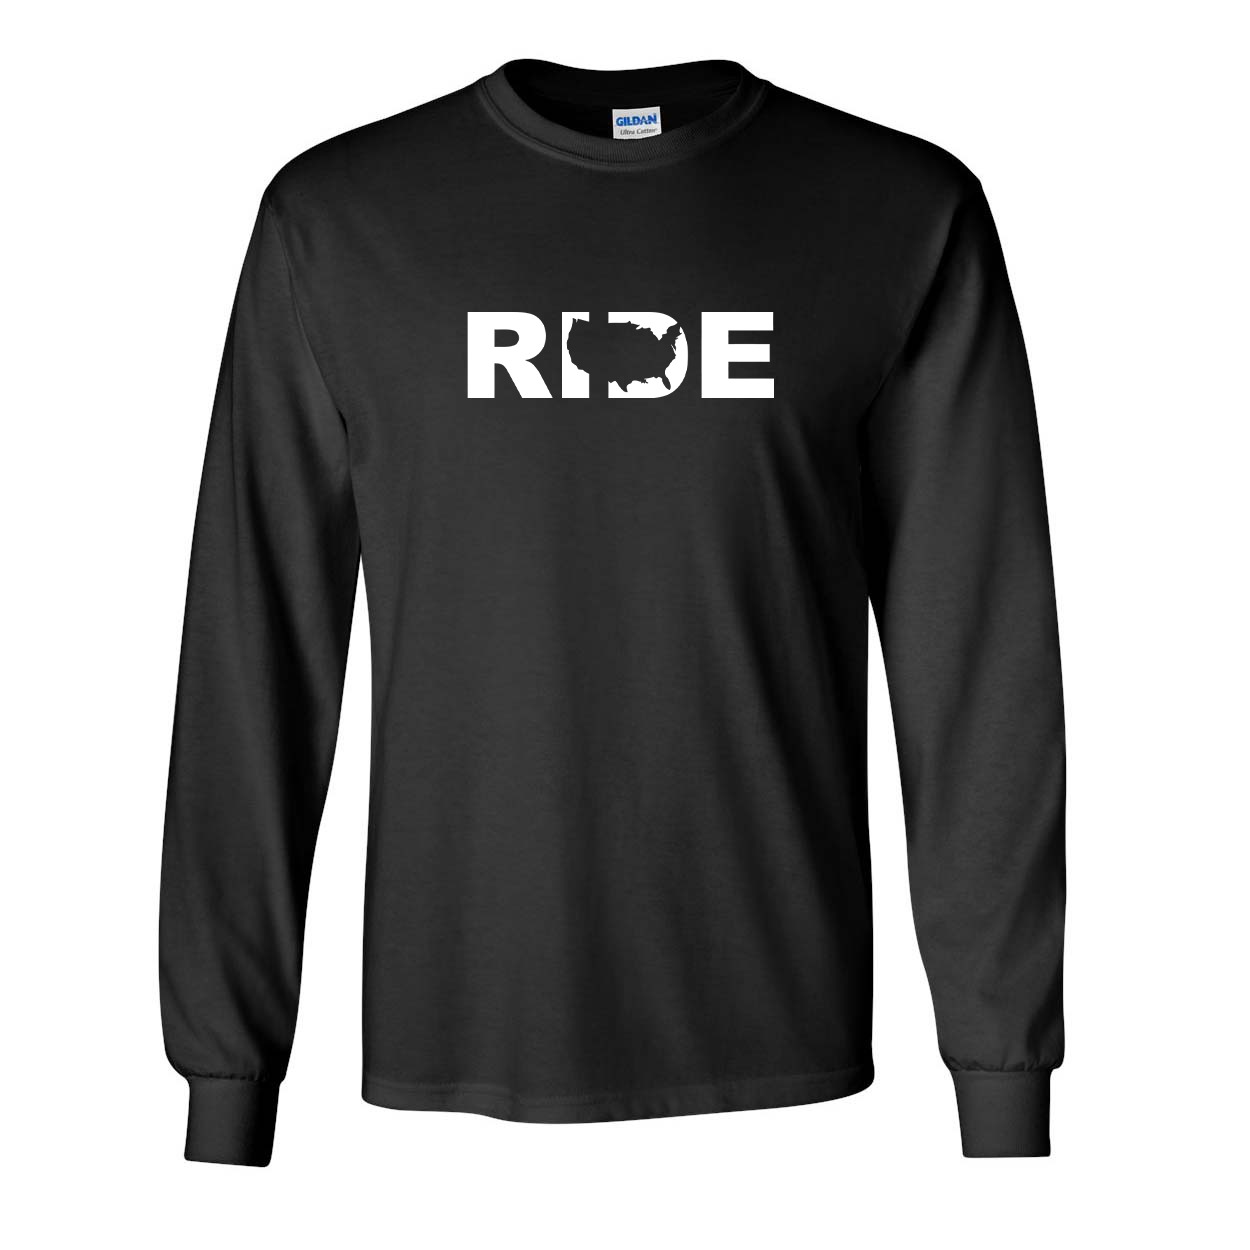 Ride United States Classic Long Sleeve T-Shirt Black (White Logo)